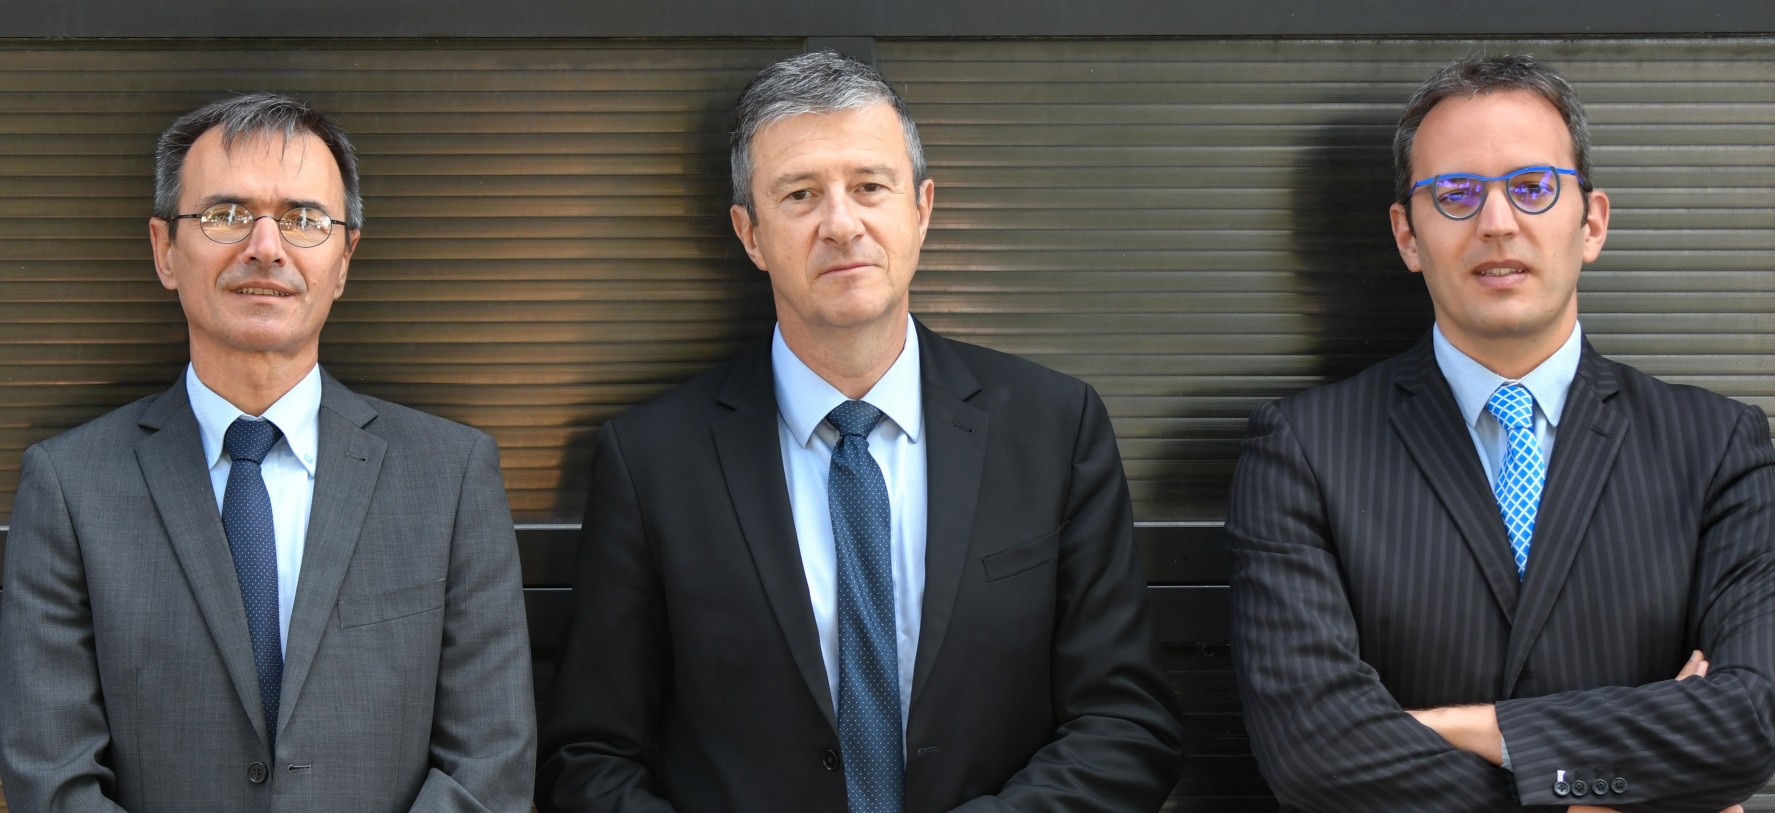 Pascal Fréneau, Olivier Trétout and Julien Dujardin